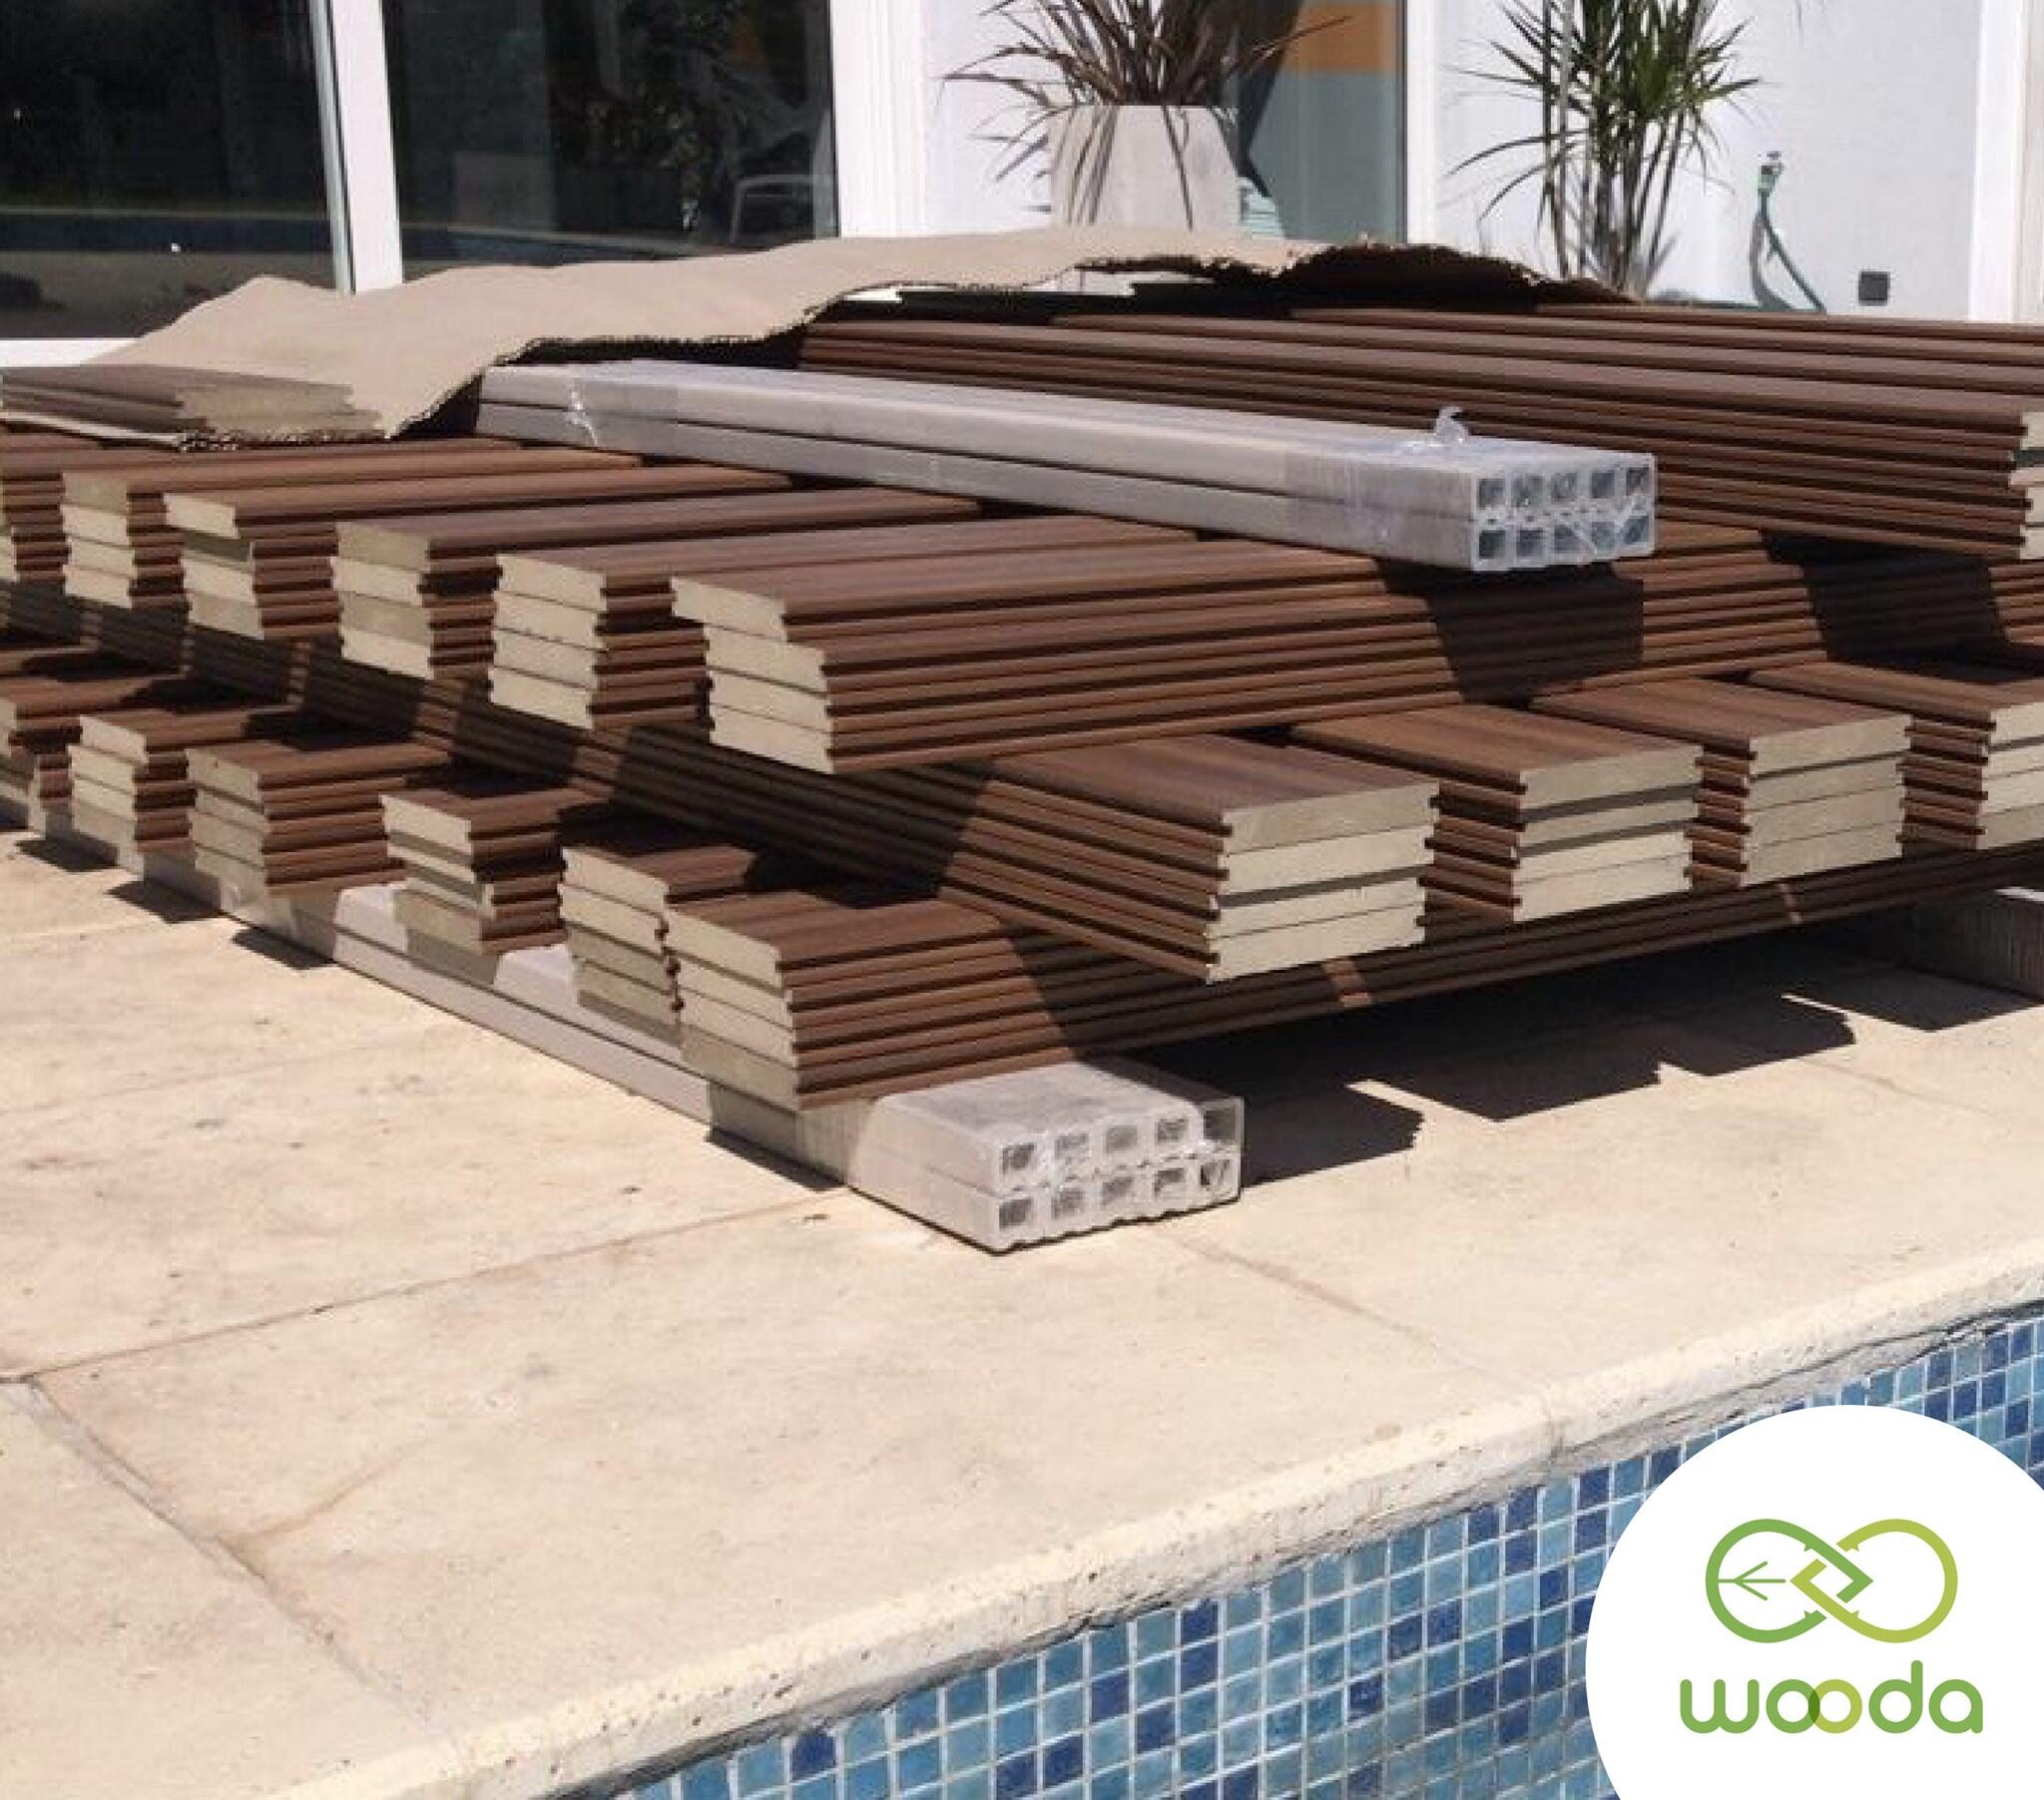 Wooda, materiales resistentes al paso del tiempo y amigables con el medio ambiente